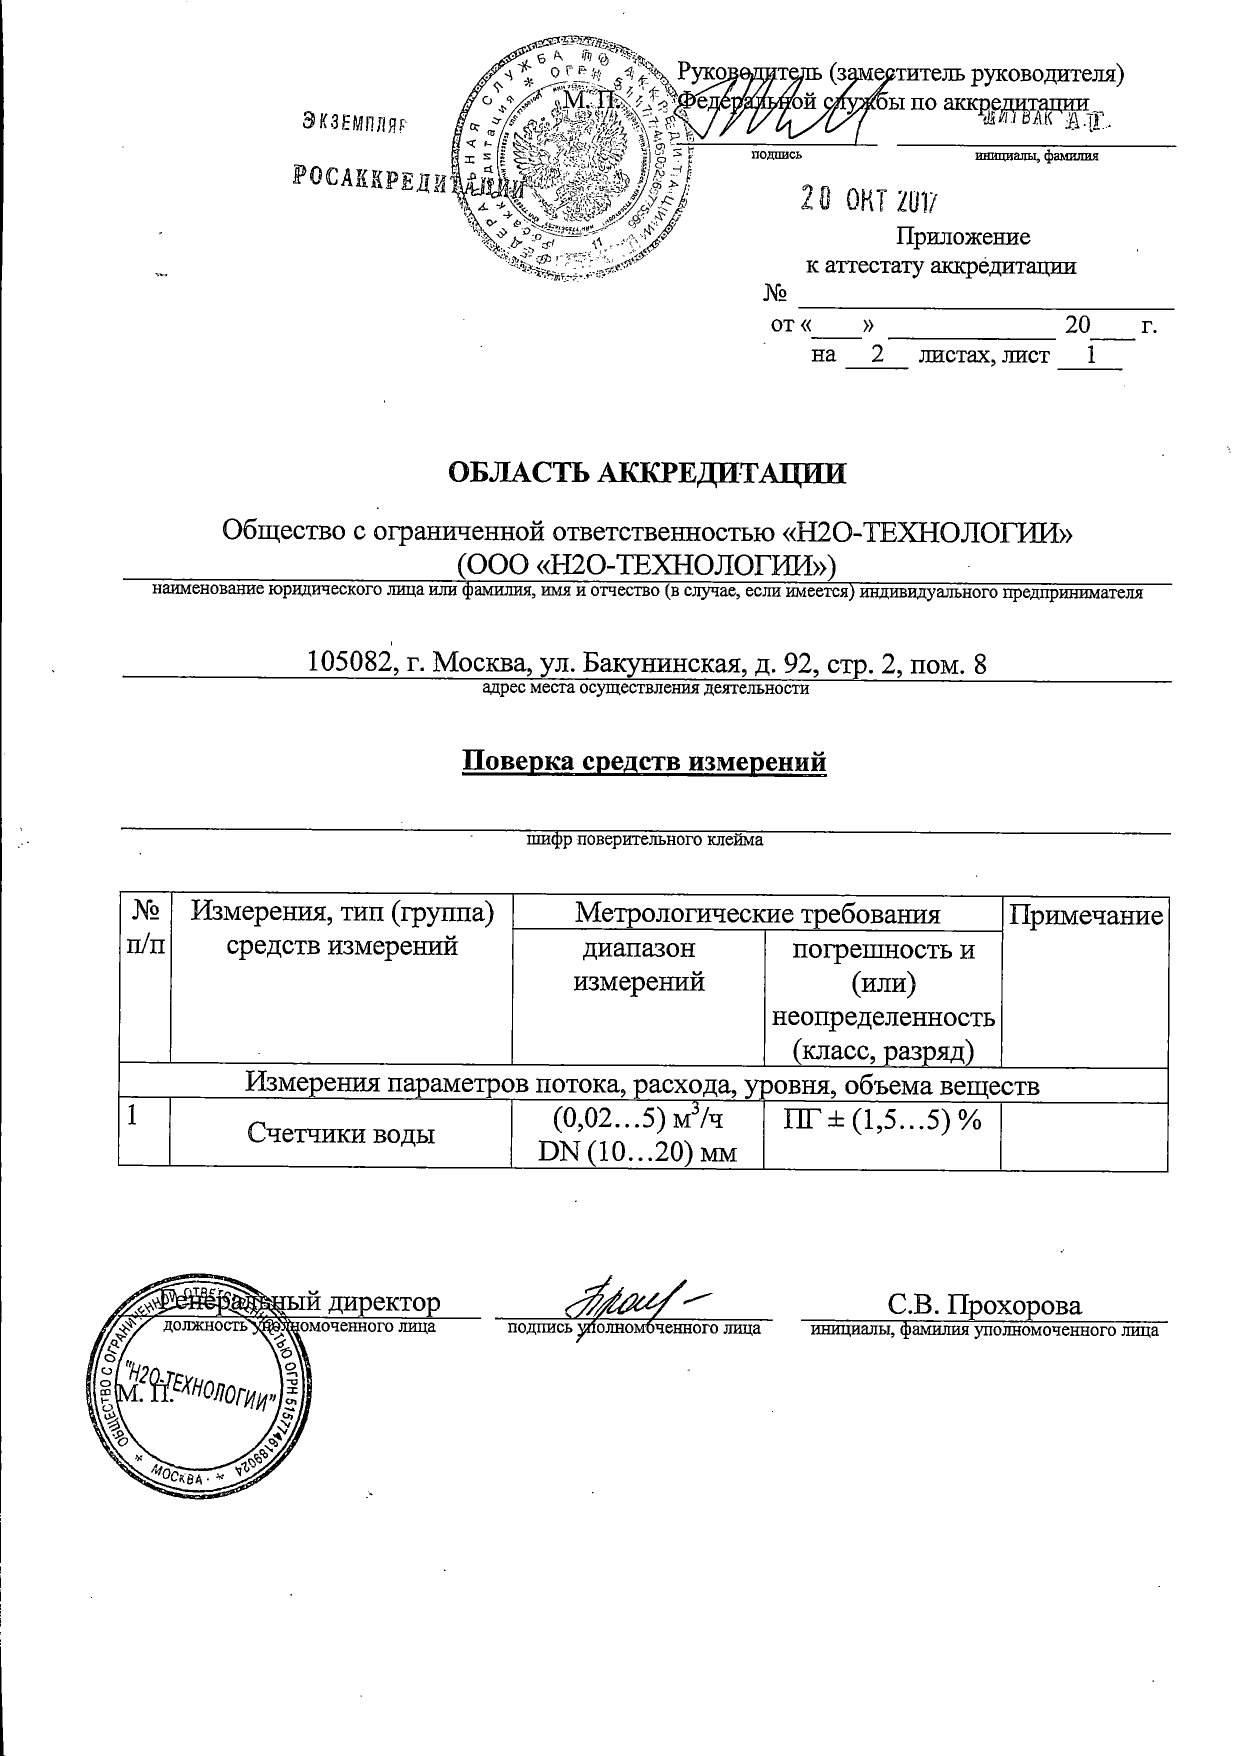 Сертификат ГК  "Н2О-ТЕХНОЛОГИИ"